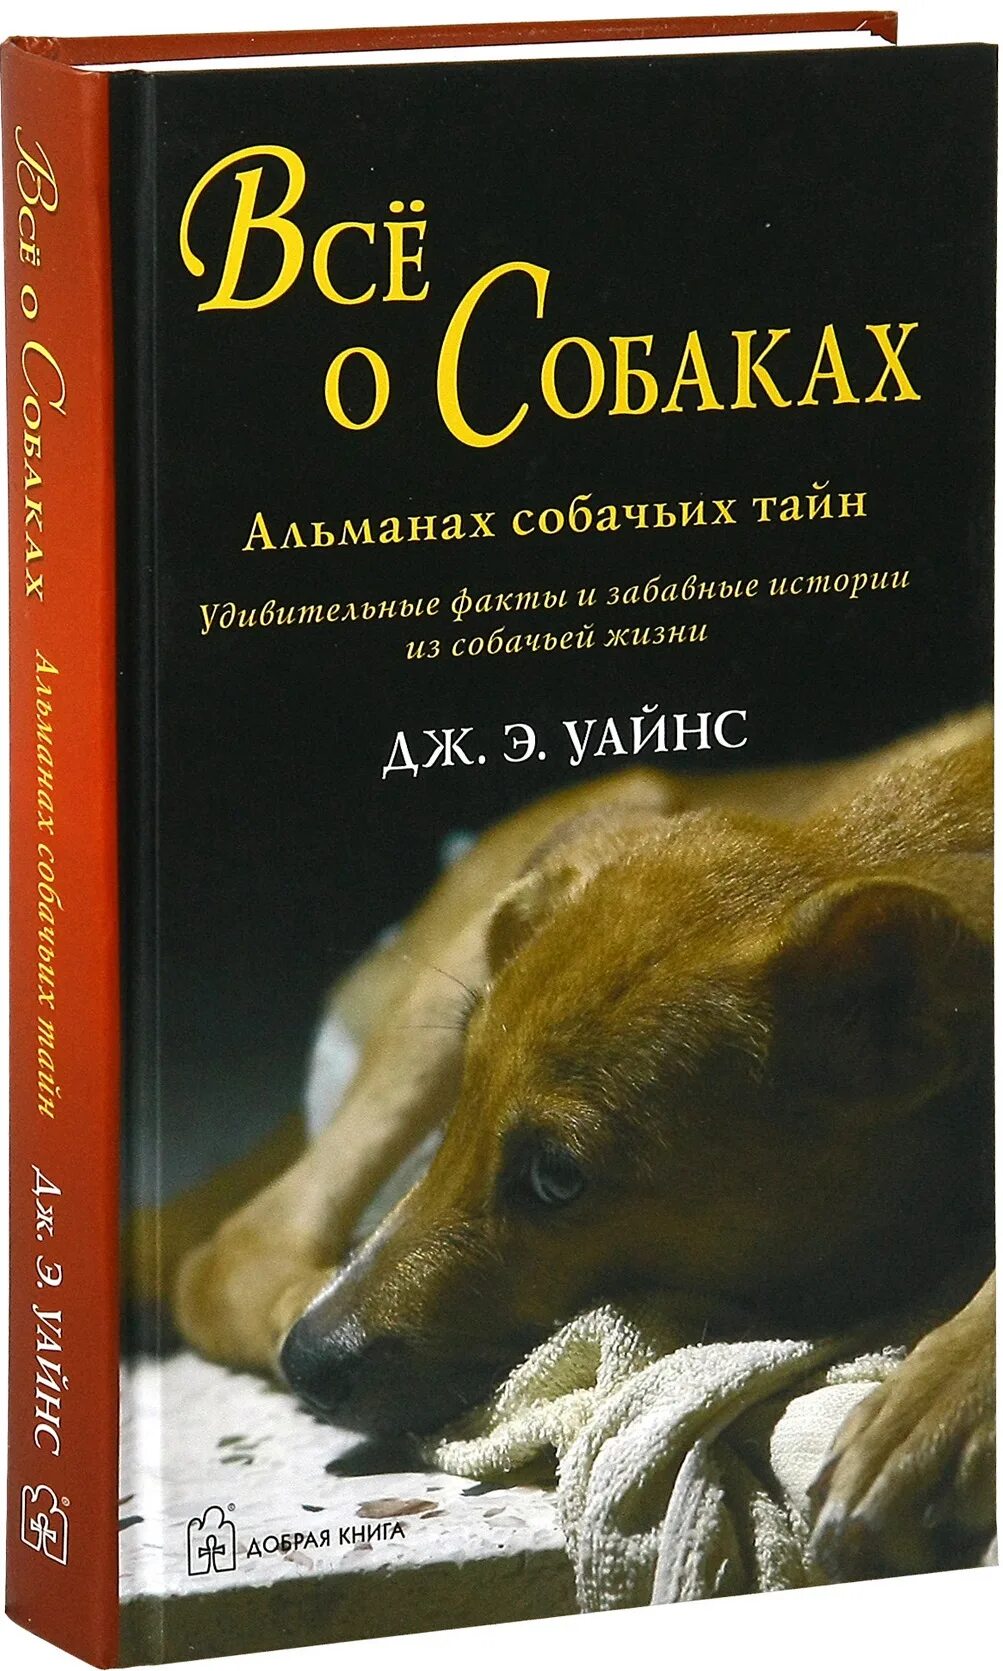 Книги про собак. Интересные книги про собак. Книги о собаках Художественные. Все о собаках книга.